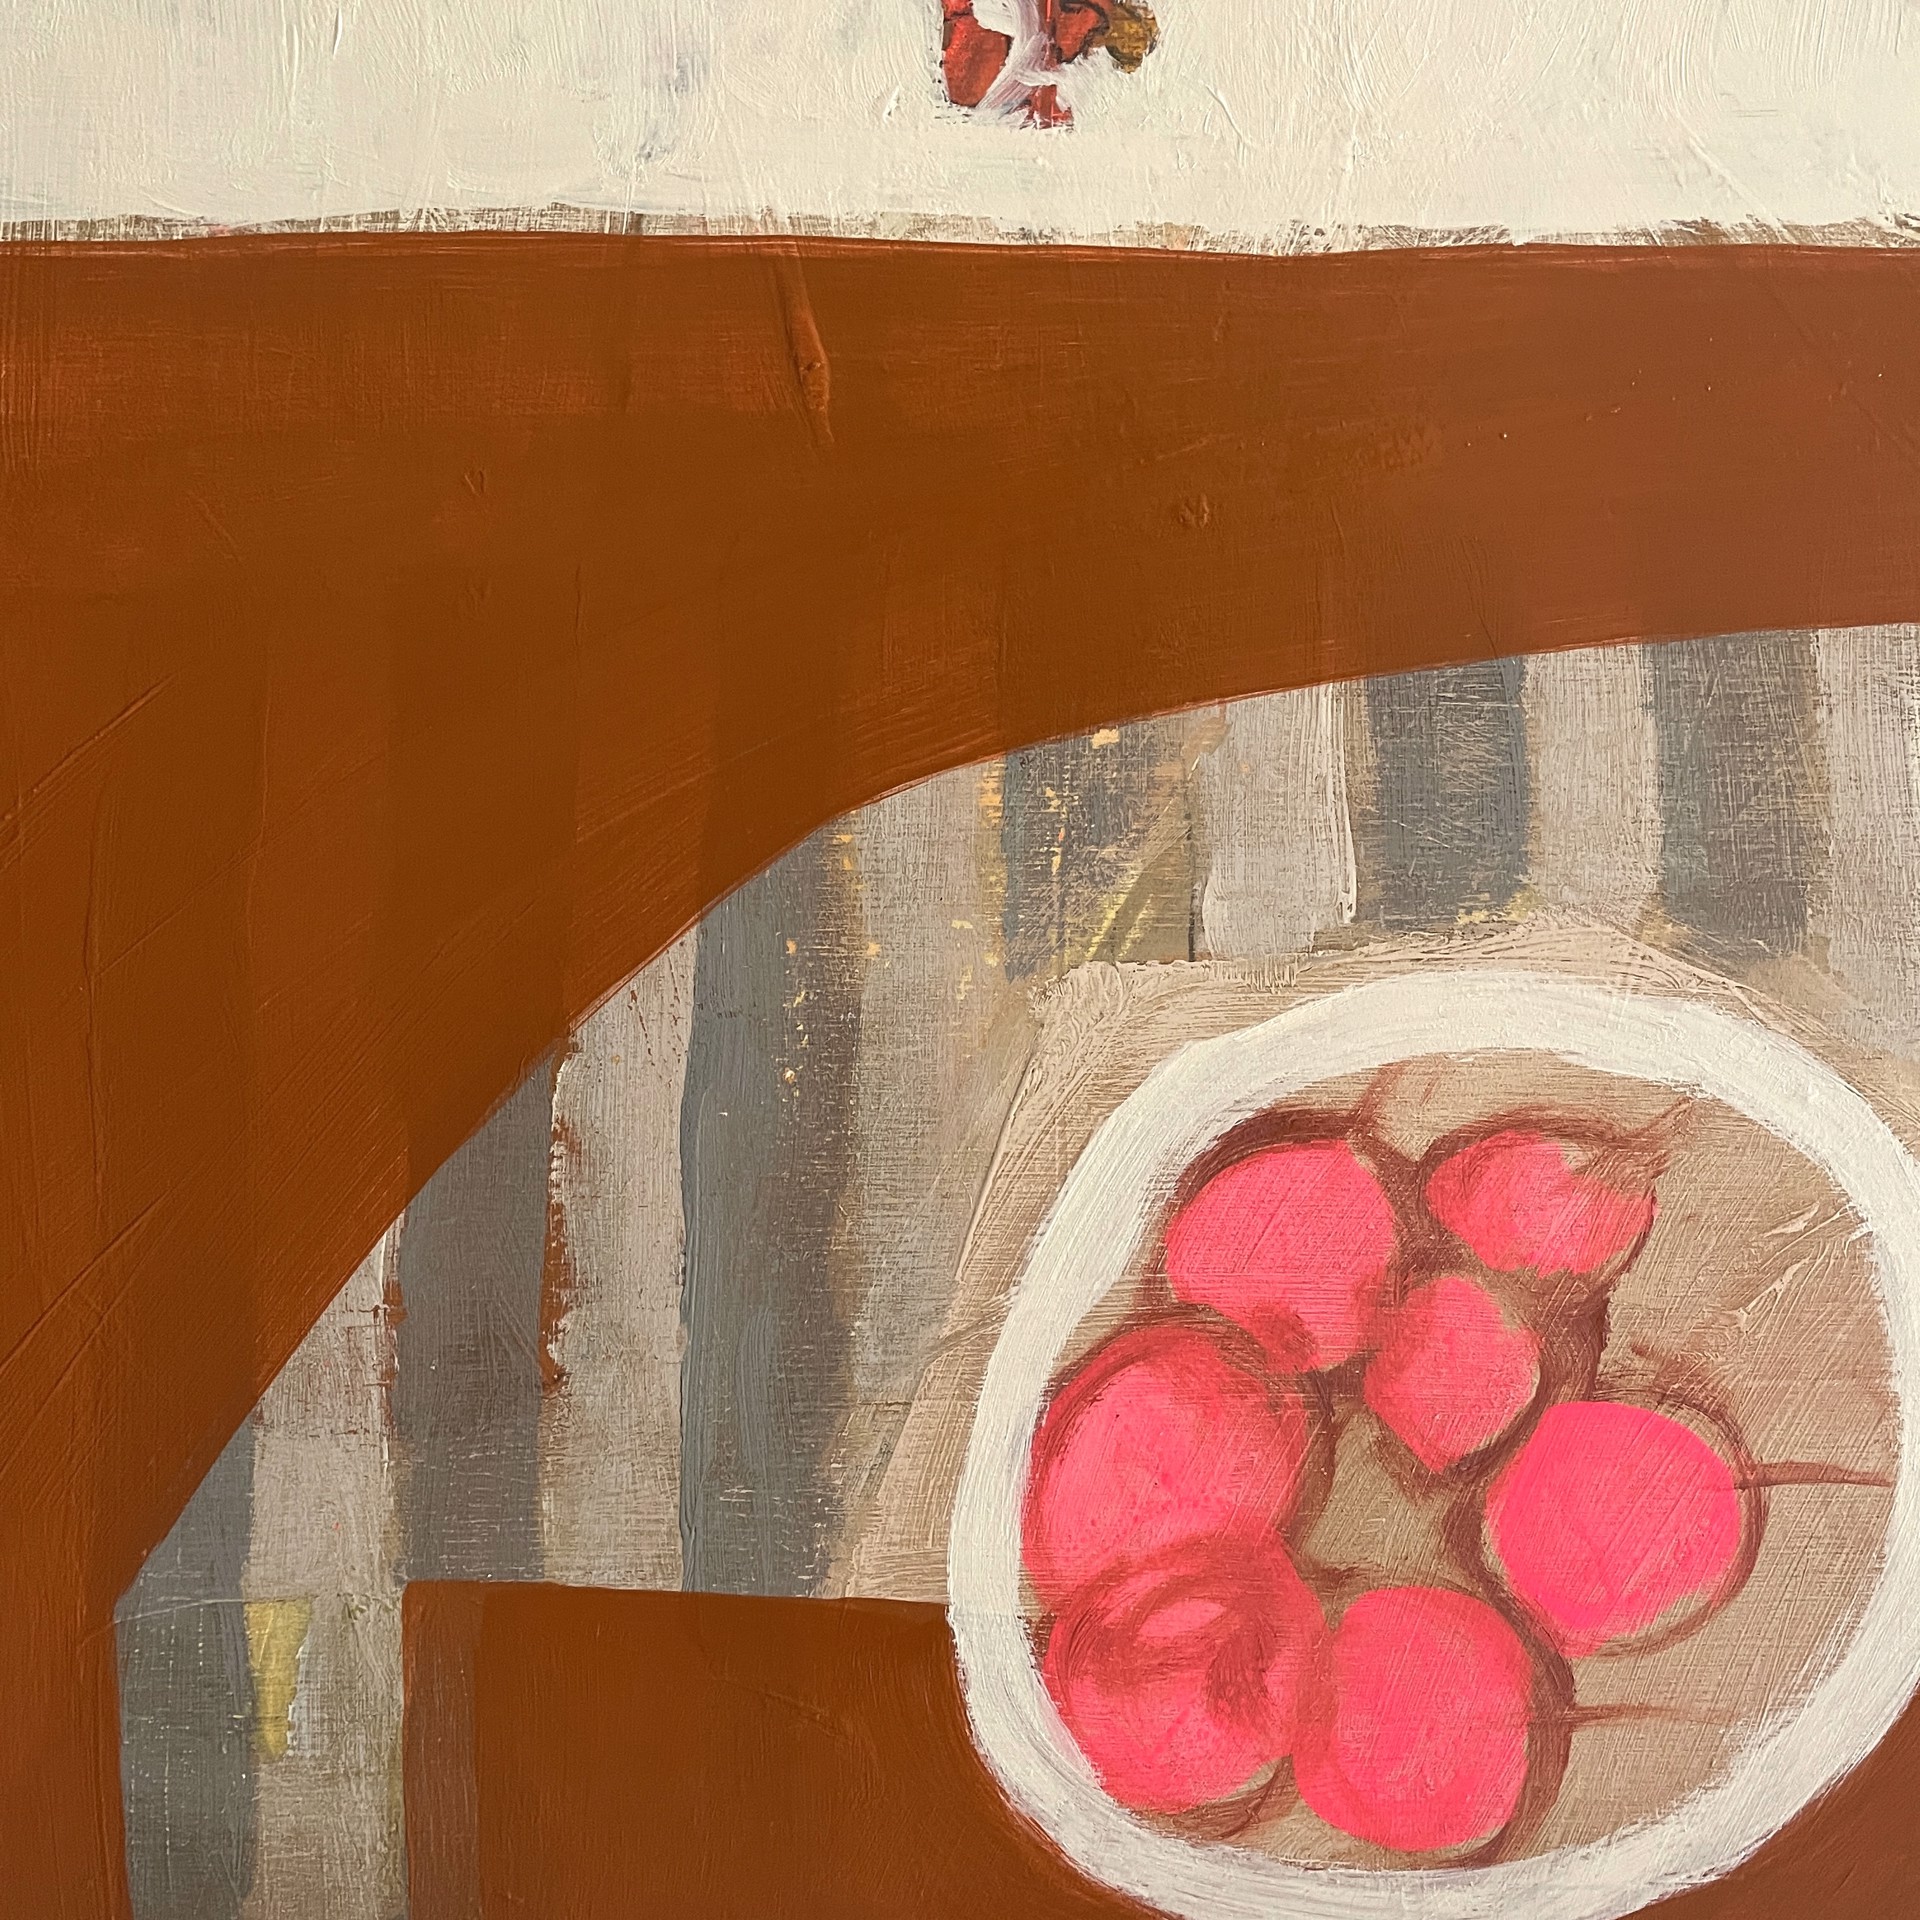 Cherries and Bittersweet on Table by Rachael Van Dyke